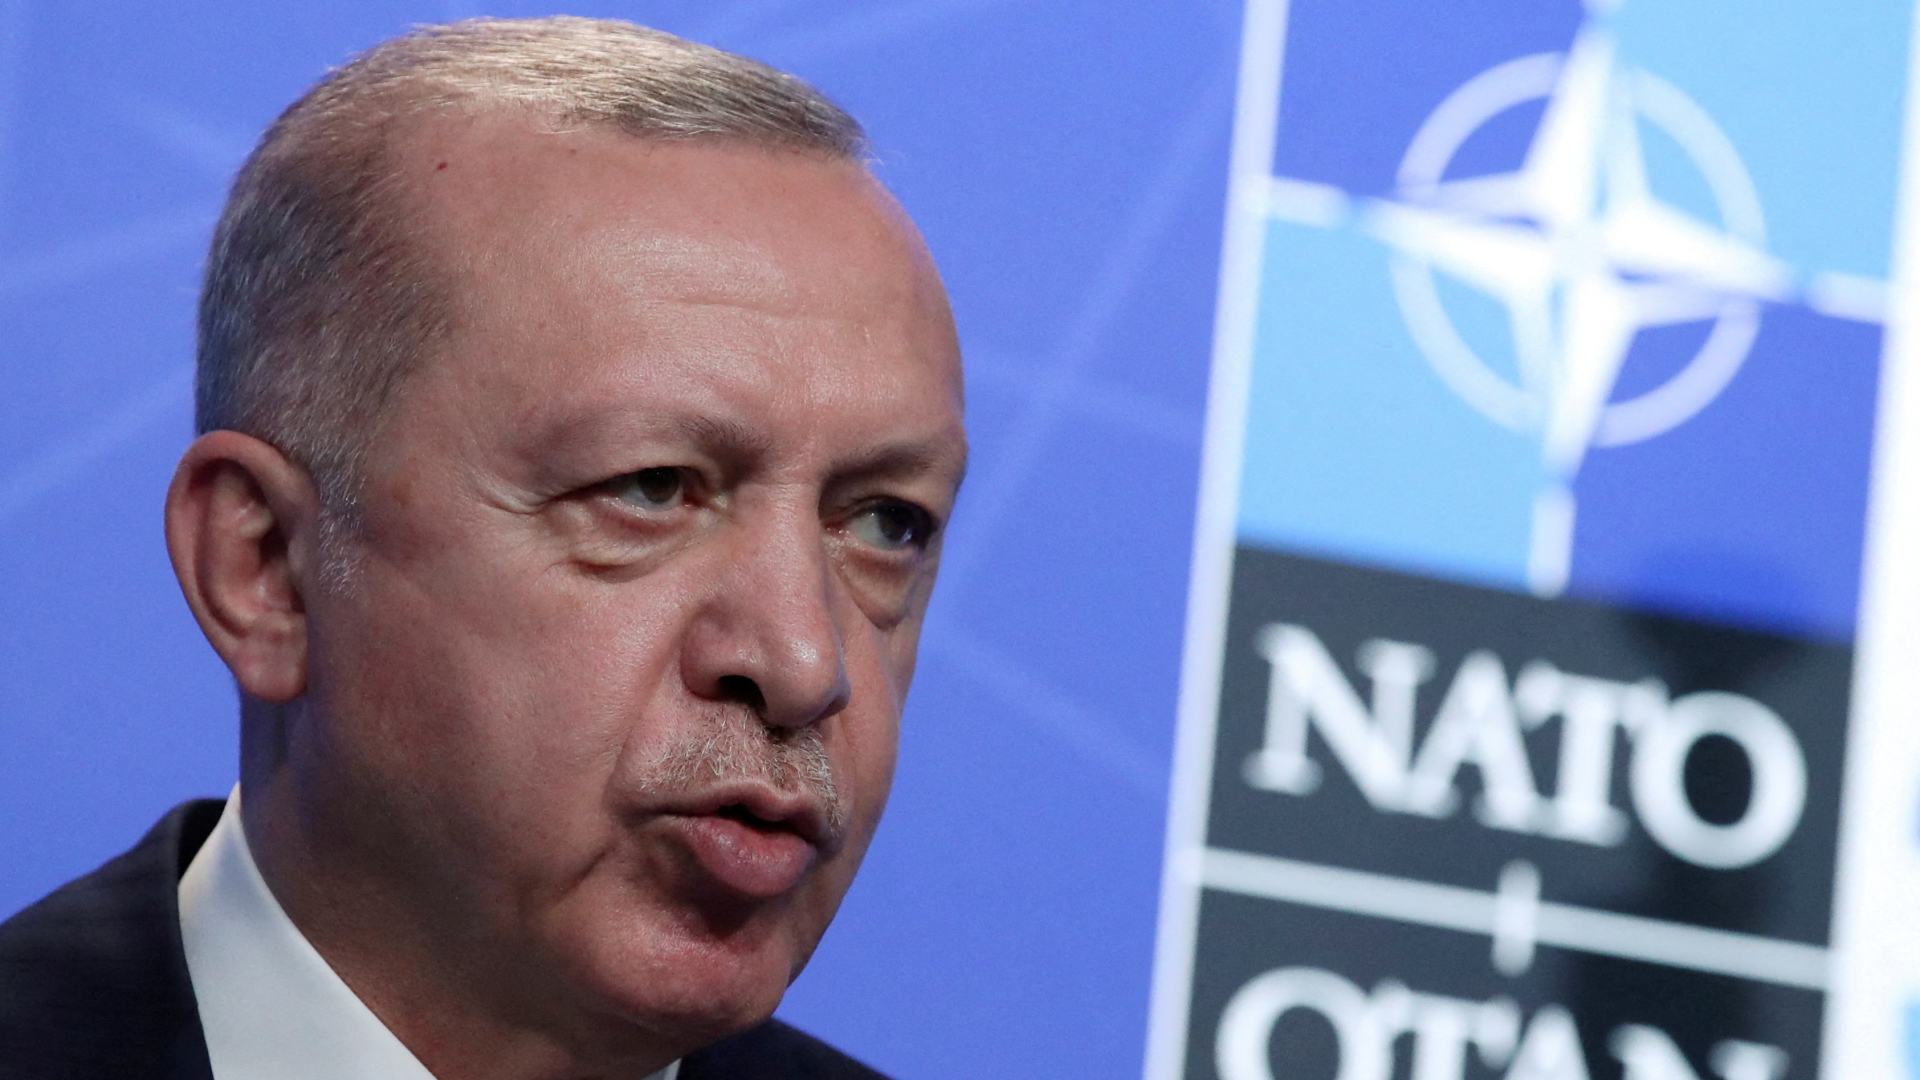 Recep Tayyip Erdogan vor einem NATO-Schriftzug | REUTERS